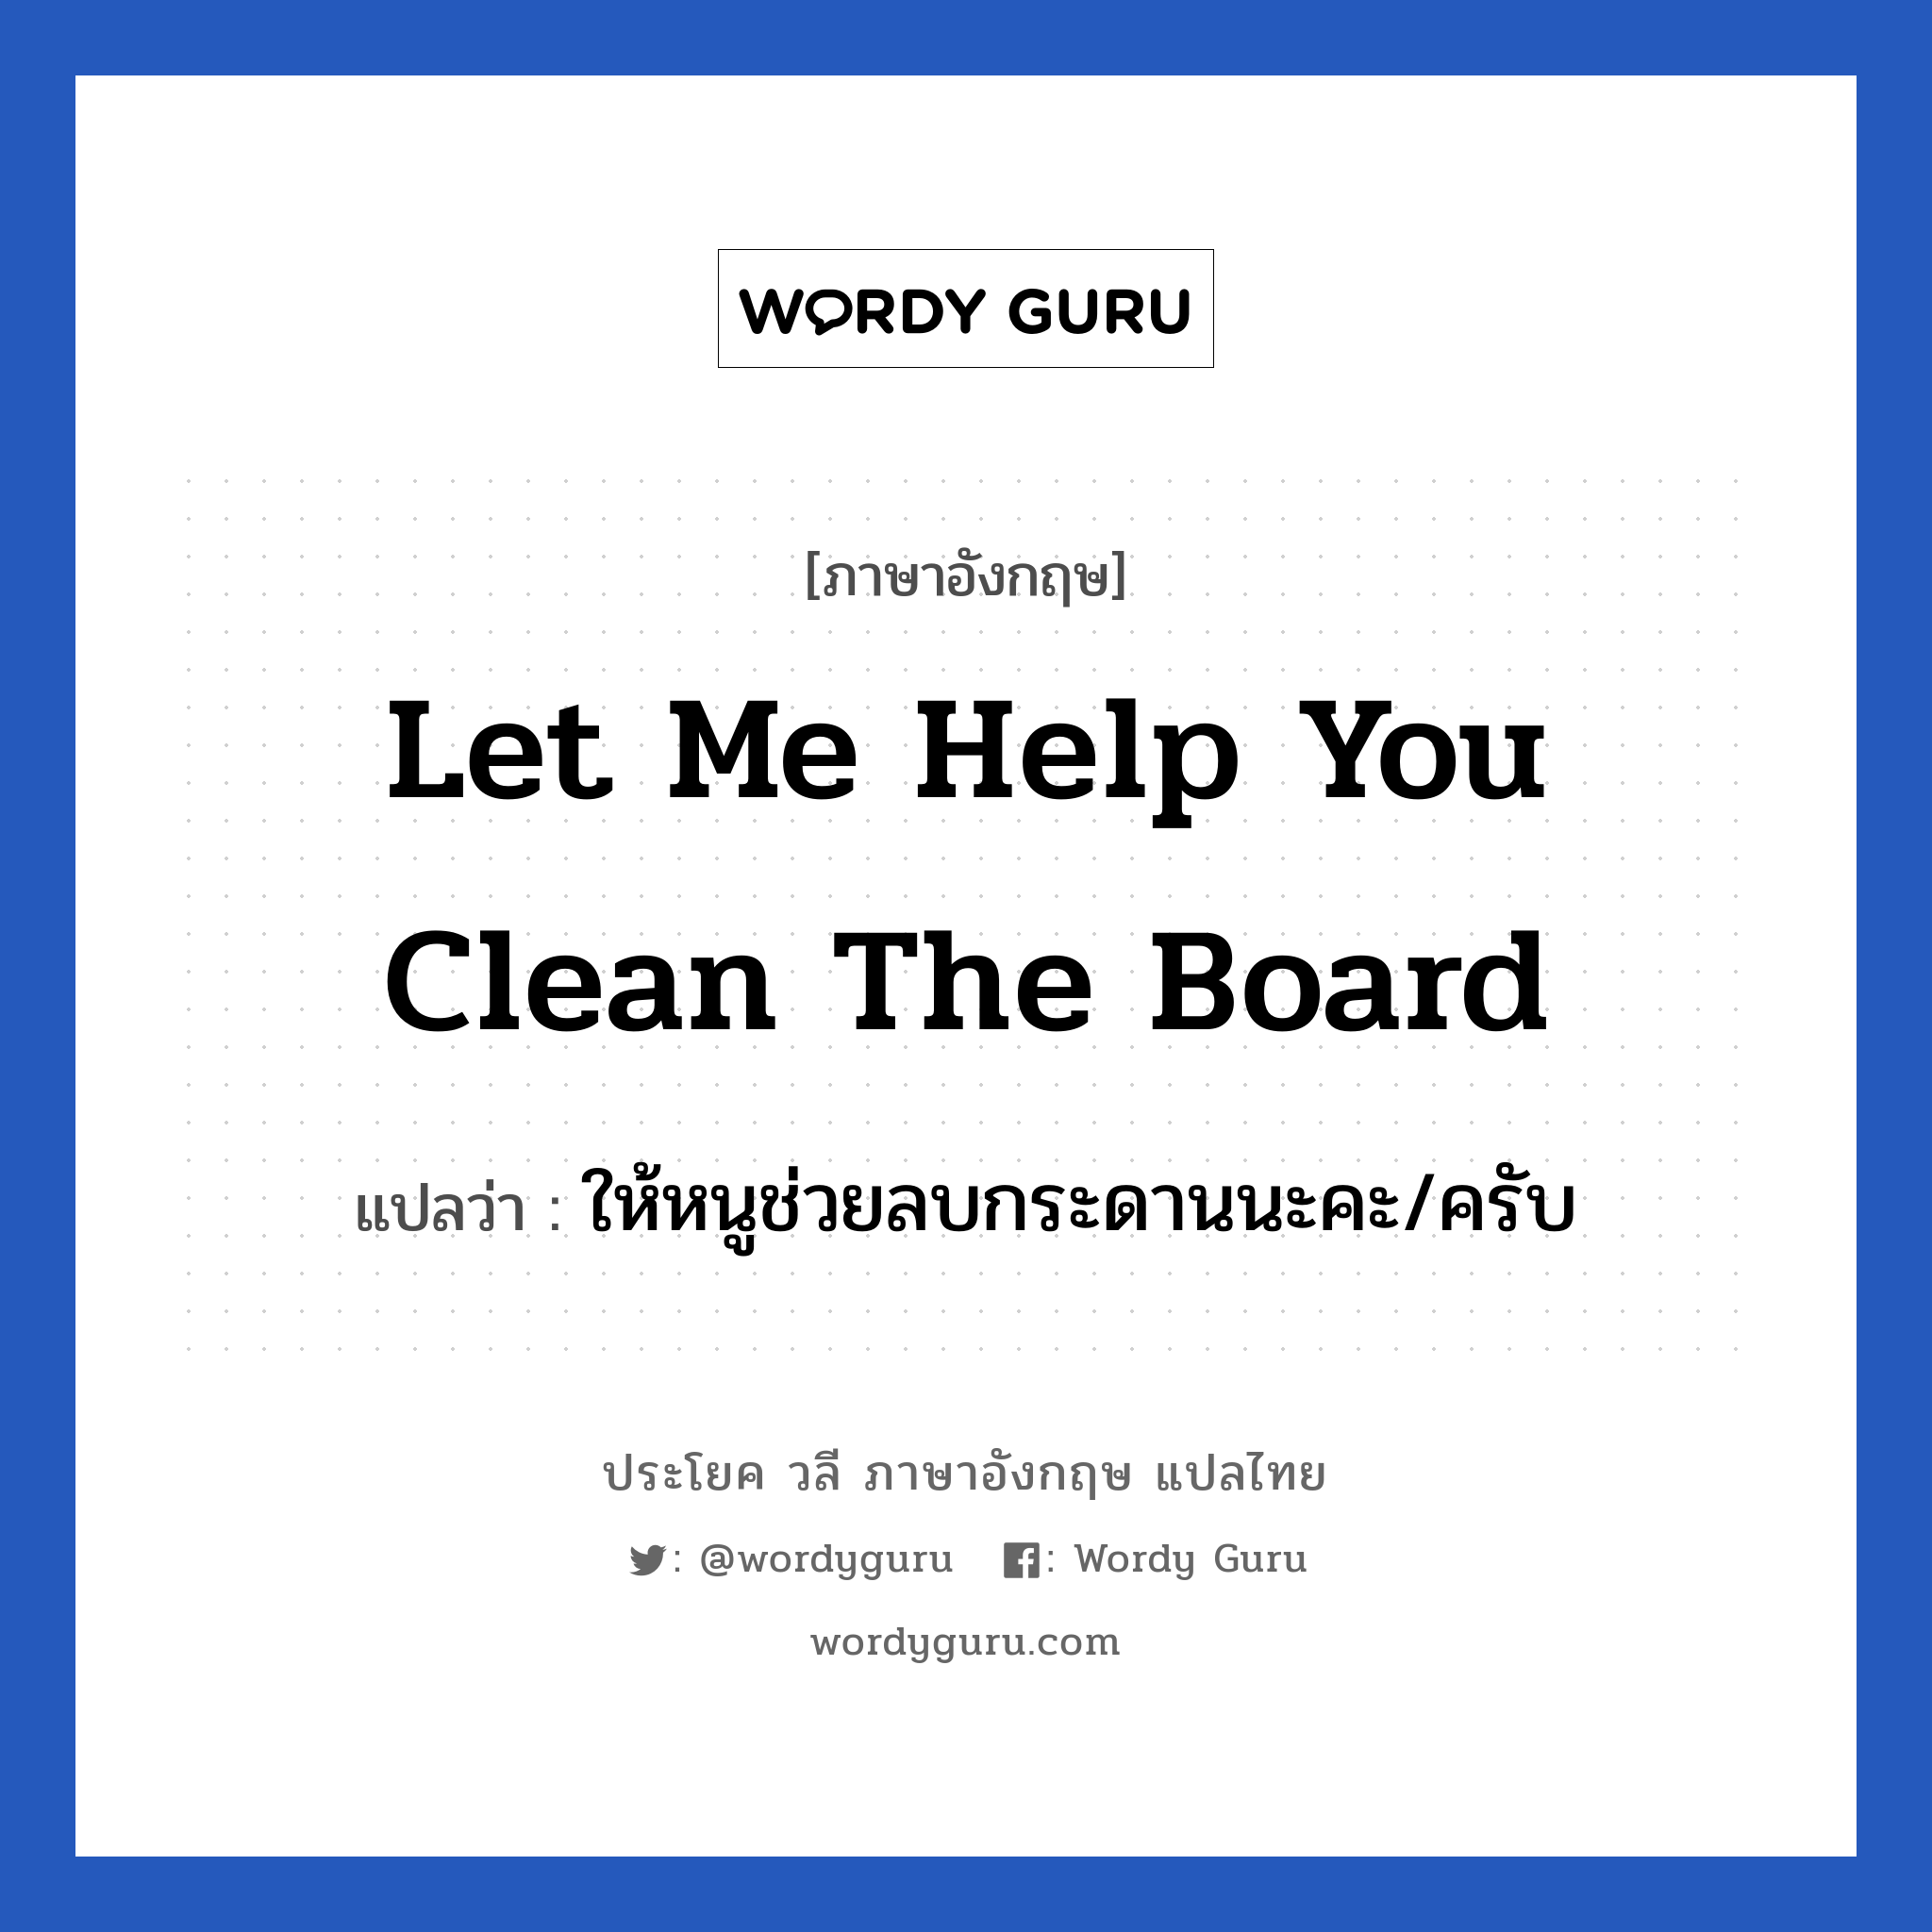 ให้หนูช่วยลบกระดานนะคะ/ครับ ภาษาอังกฤษ?, วลีภาษาอังกฤษ ให้หนูช่วยลบกระดานนะคะ/ครับ แปลว่า Let me help you clean the board